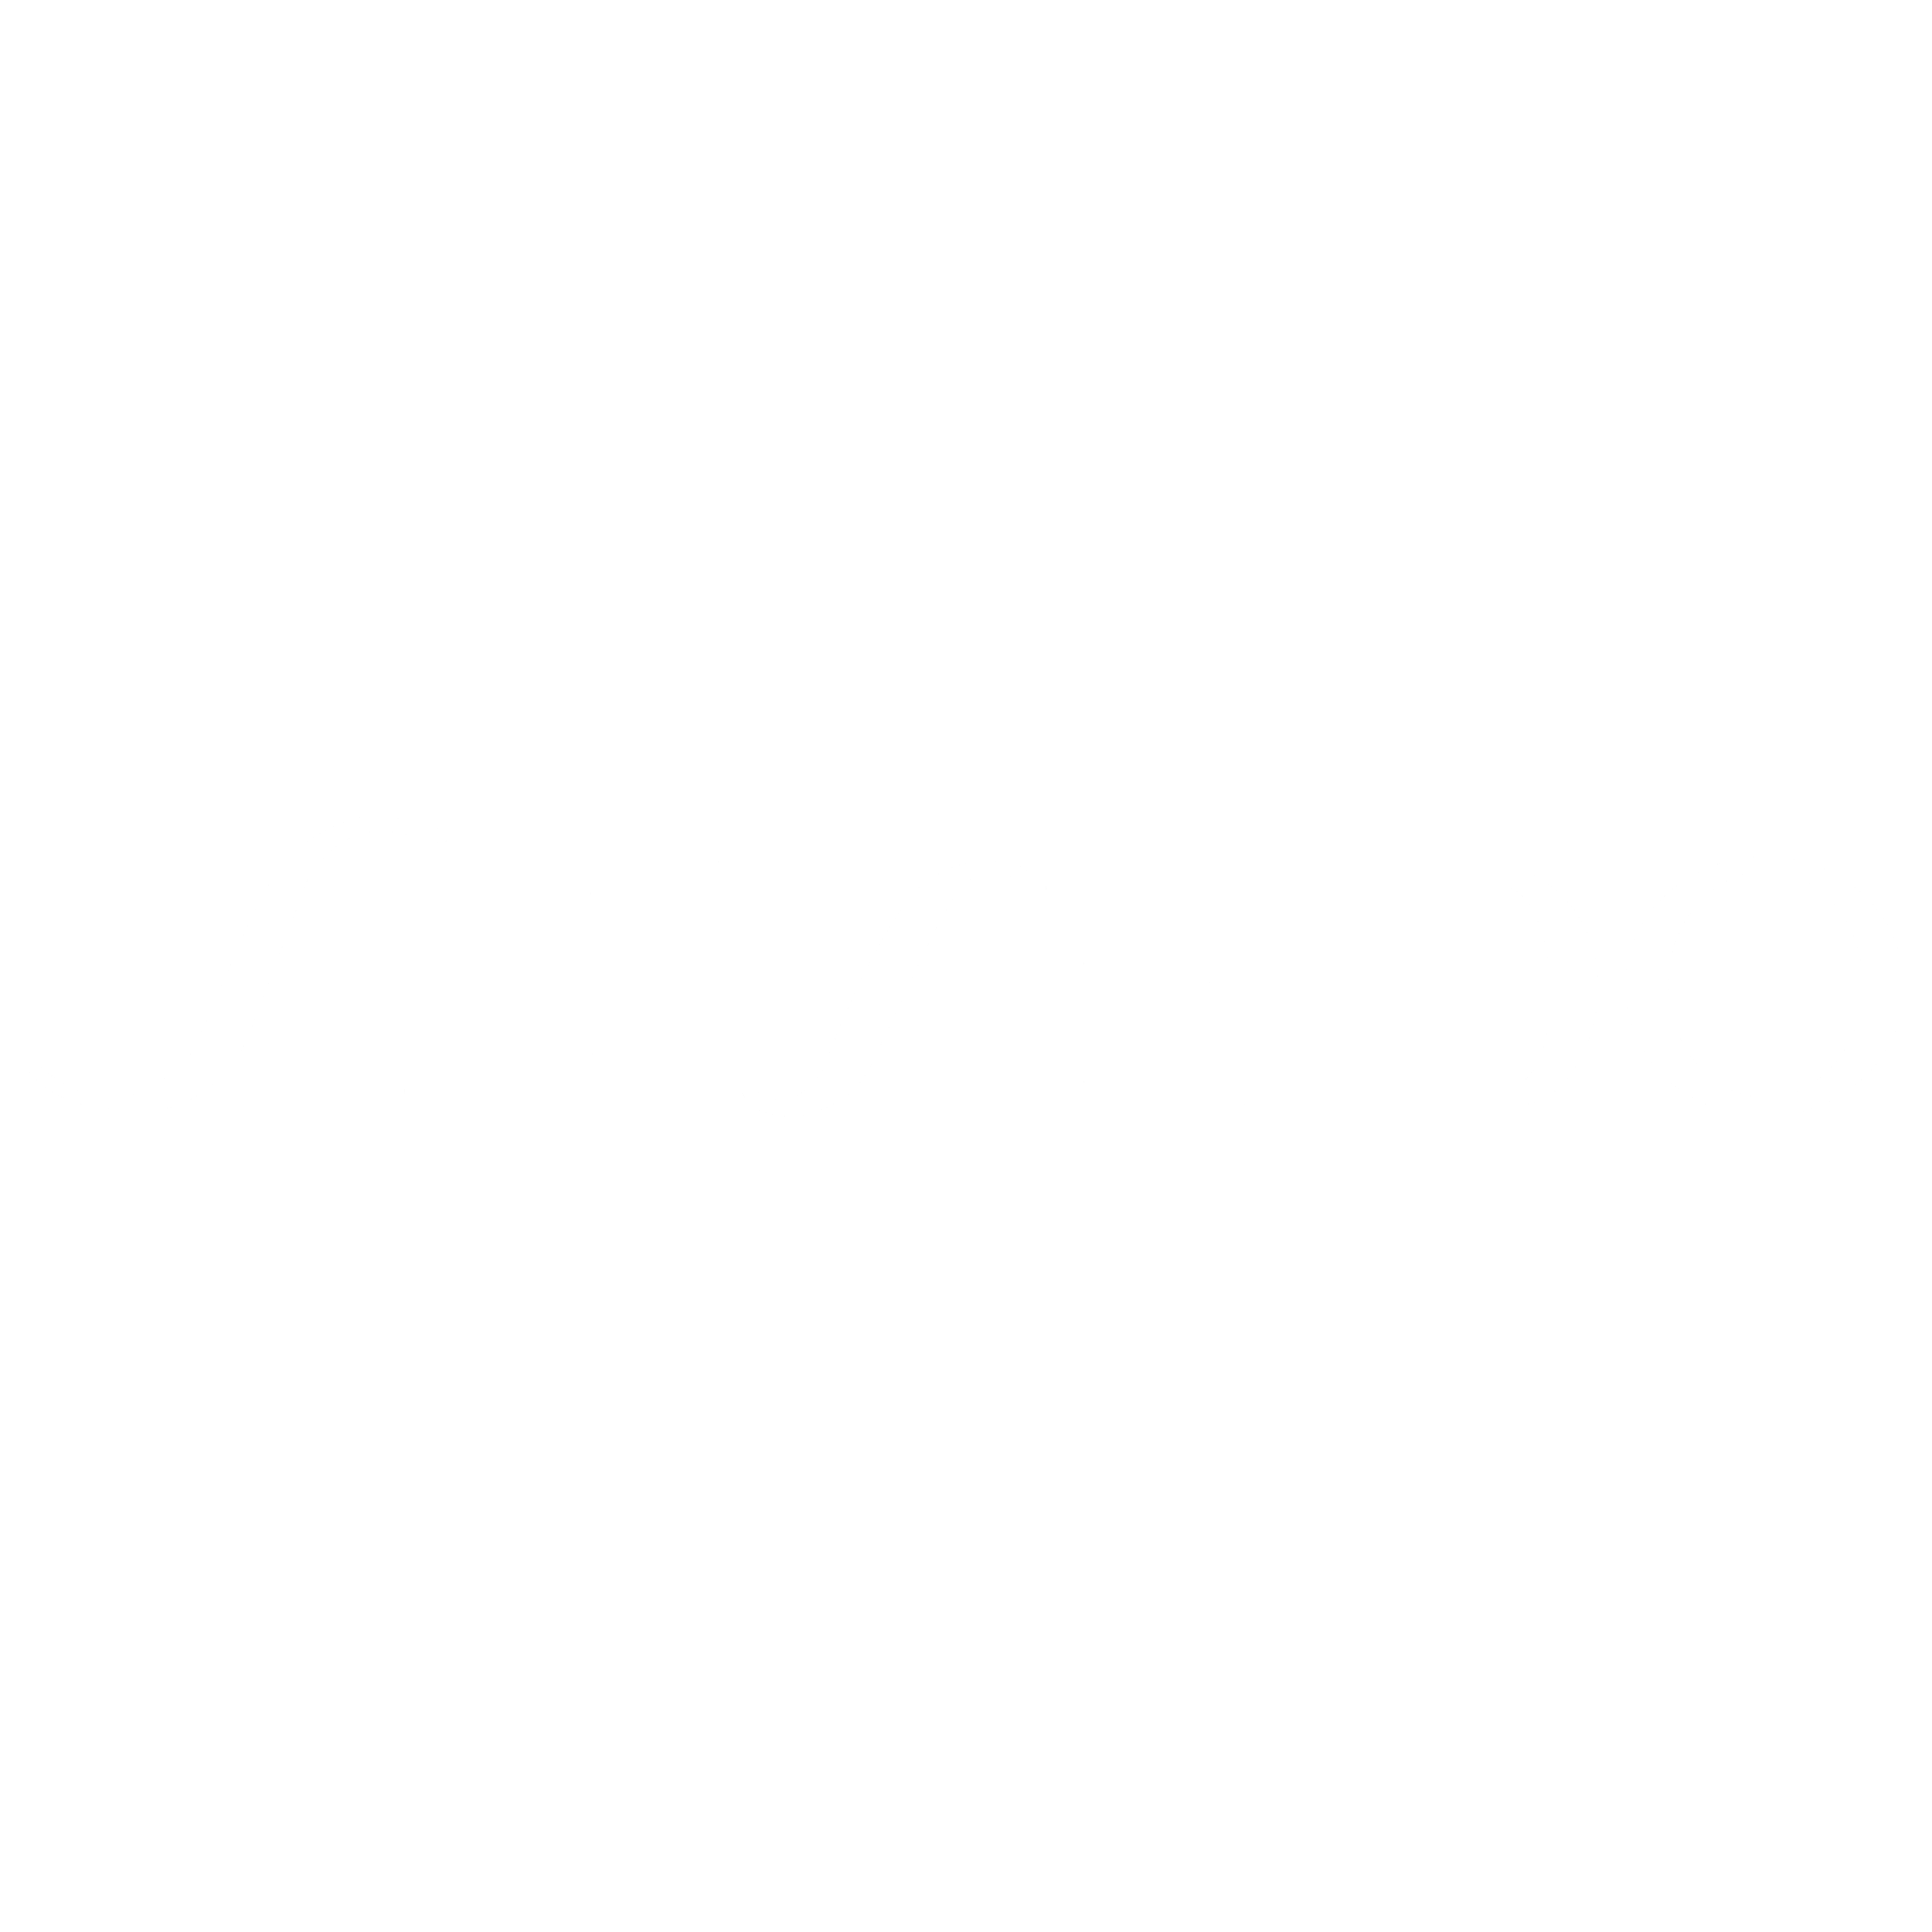 shiseido-white-logo